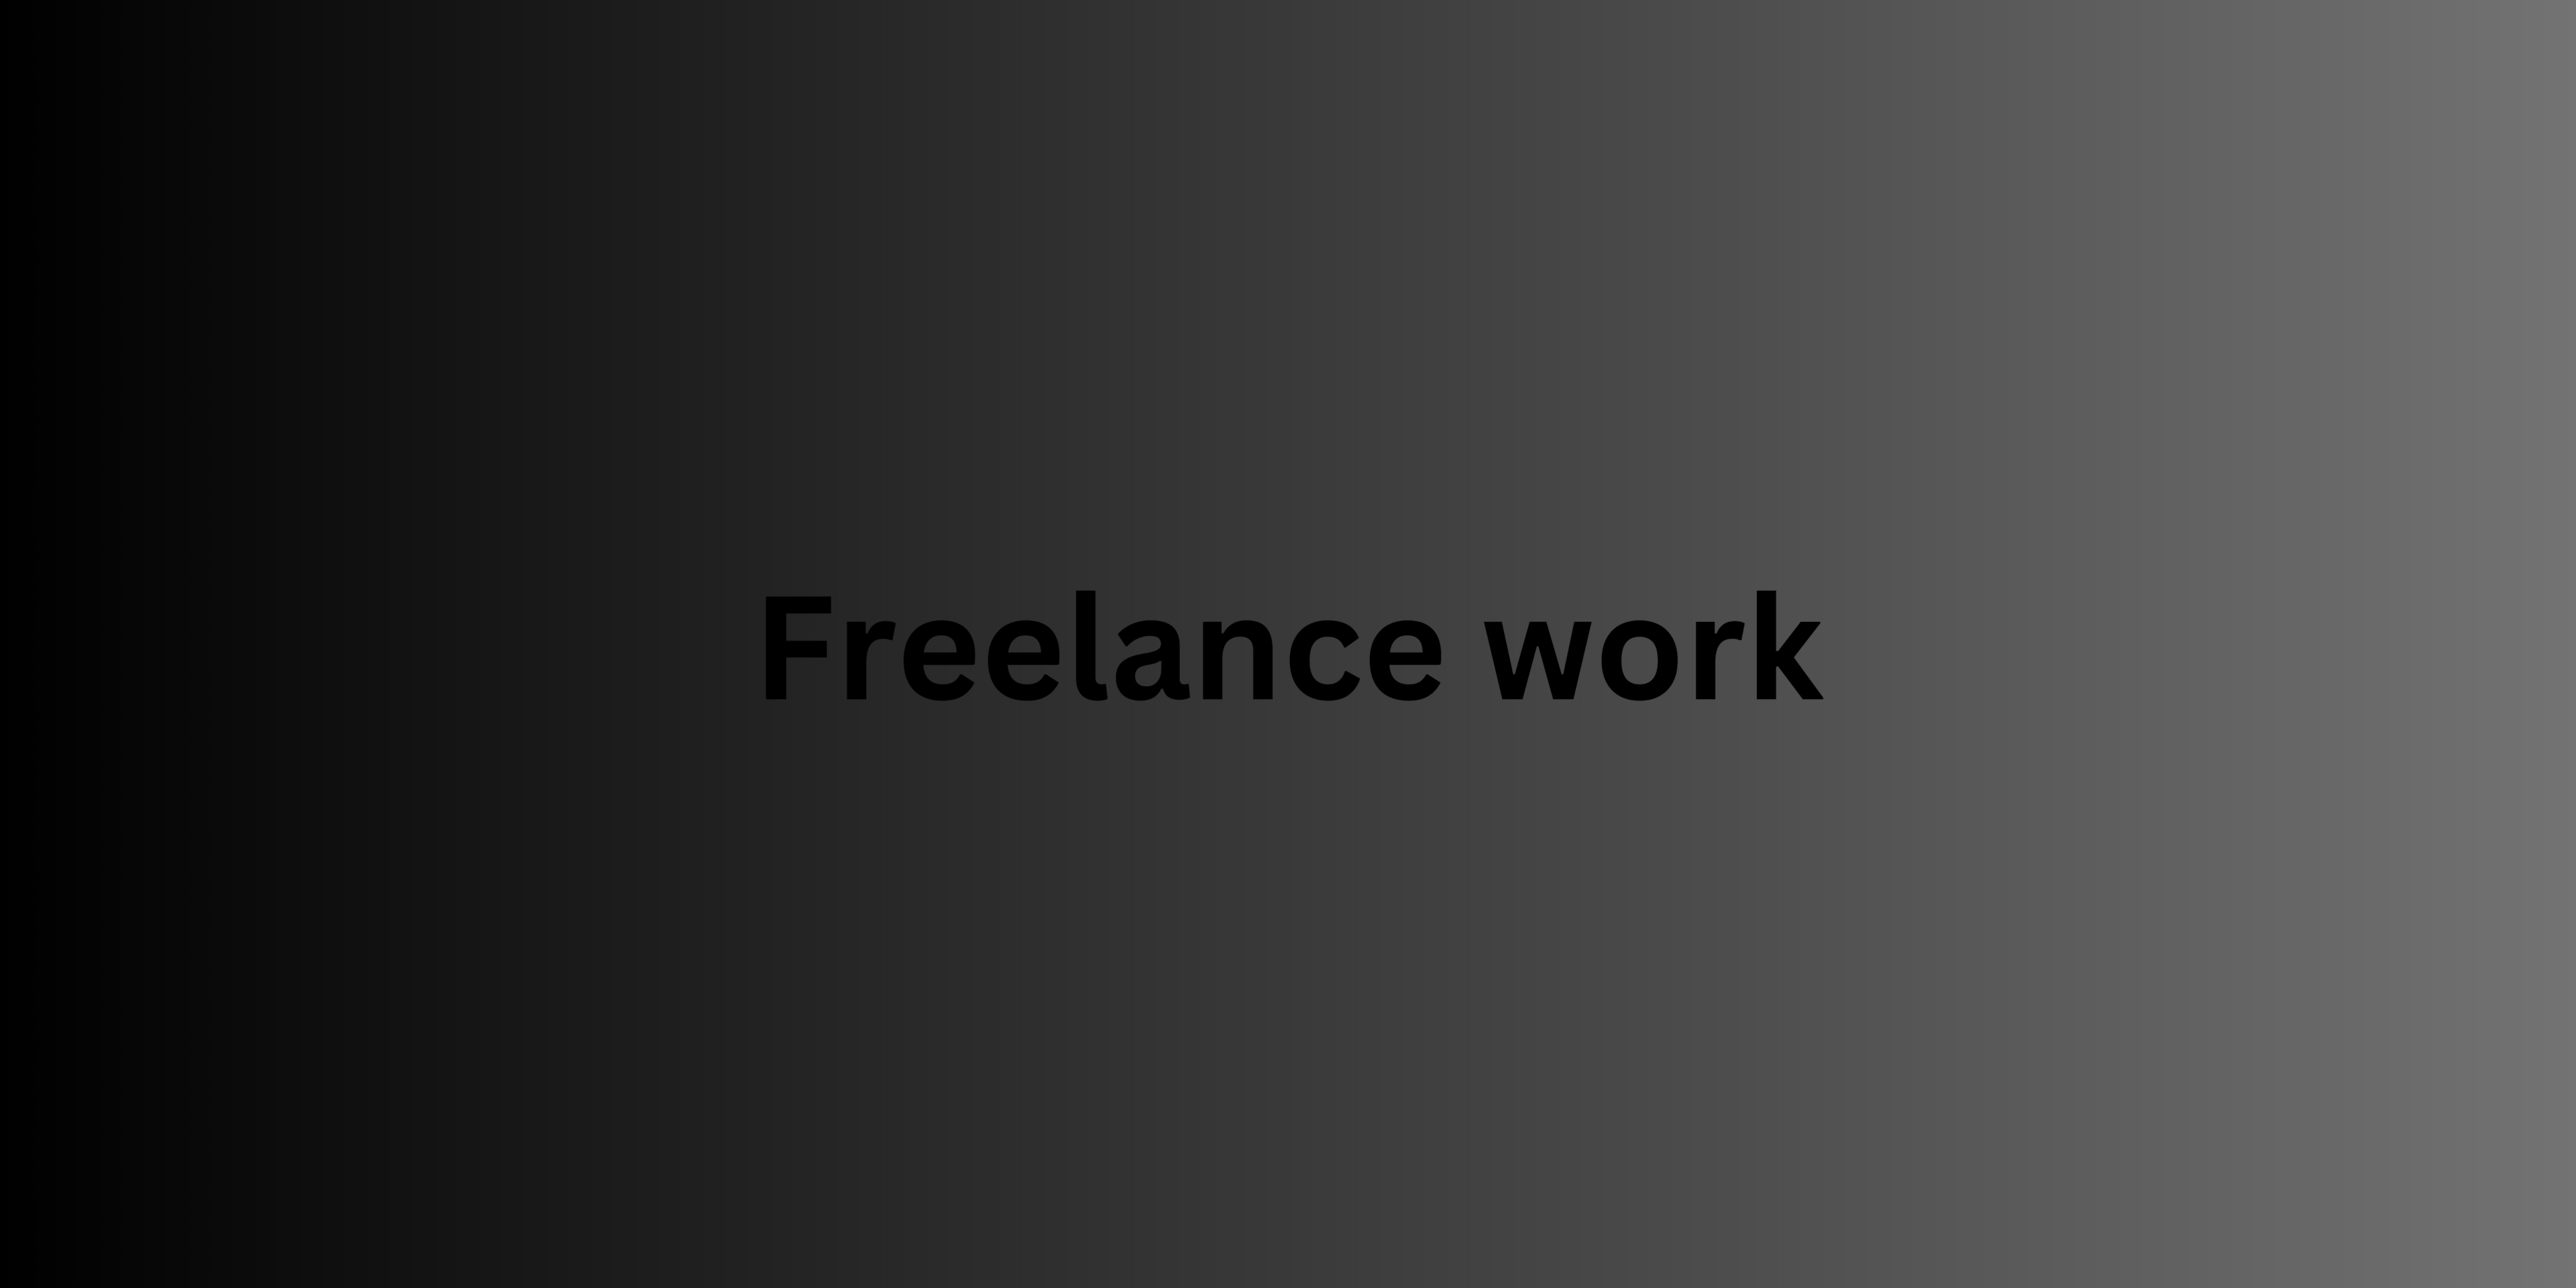 Freelance work